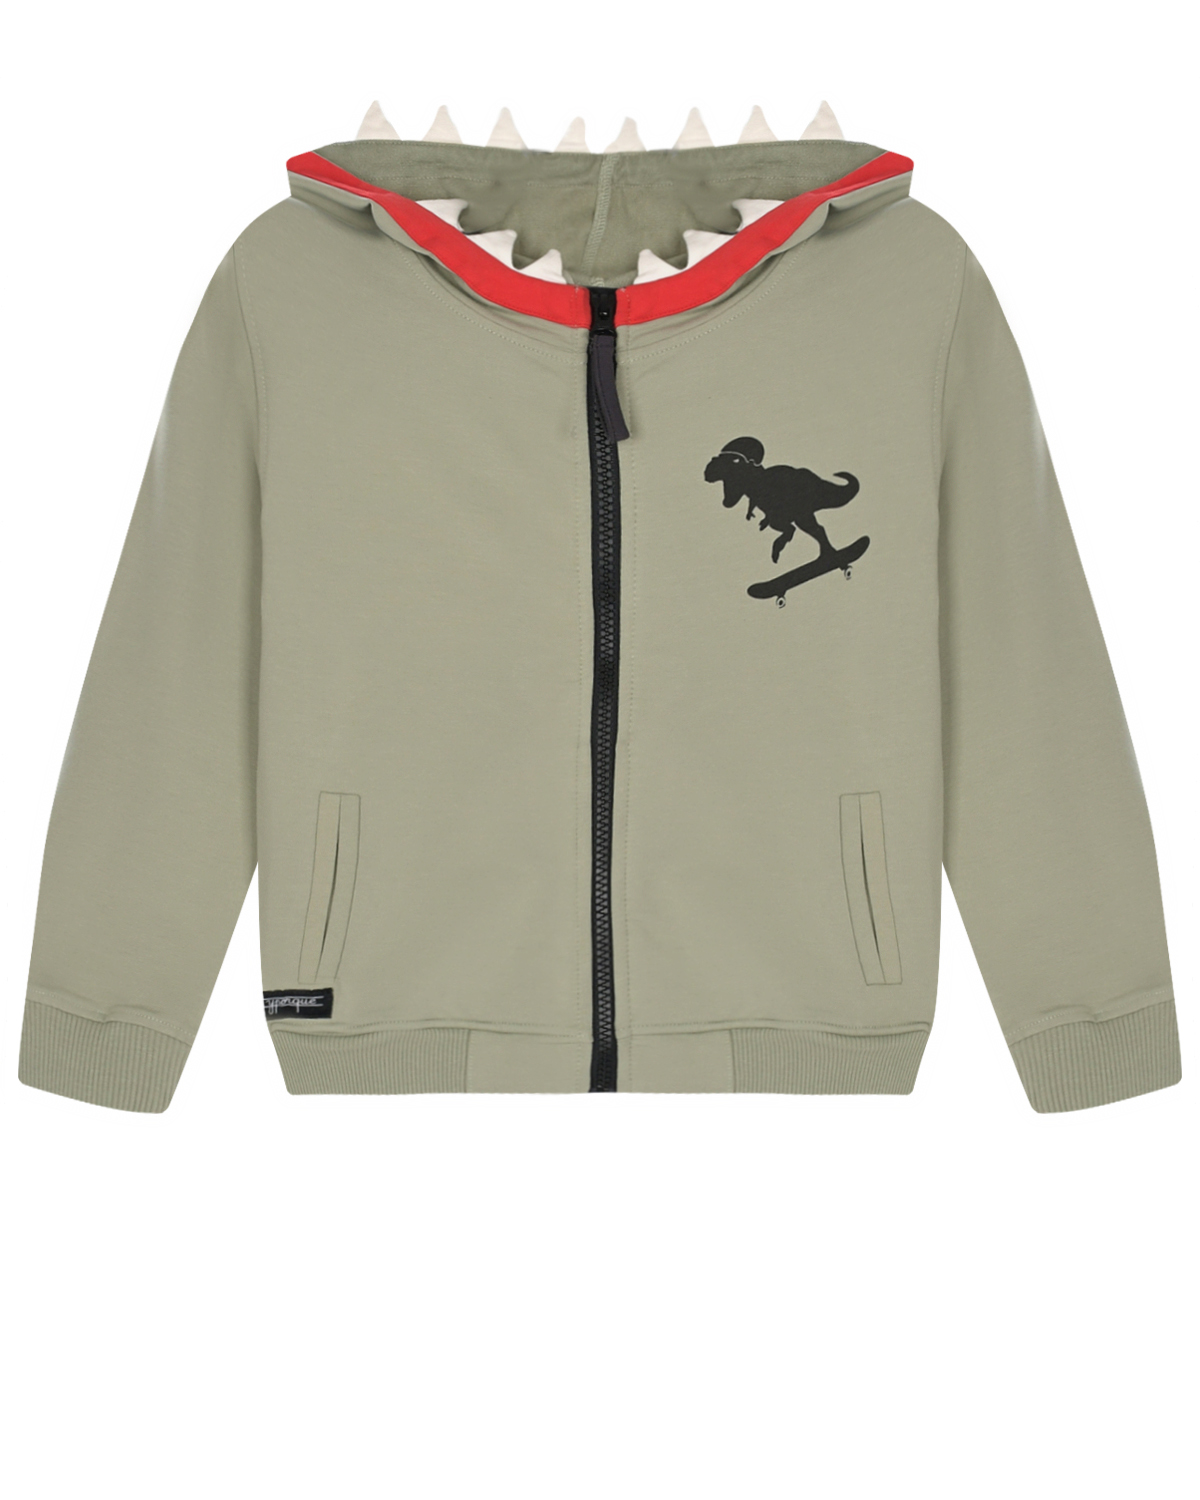 Спортивная куртка с принтом "динозавр" Yporque, размер 128, цвет хаки